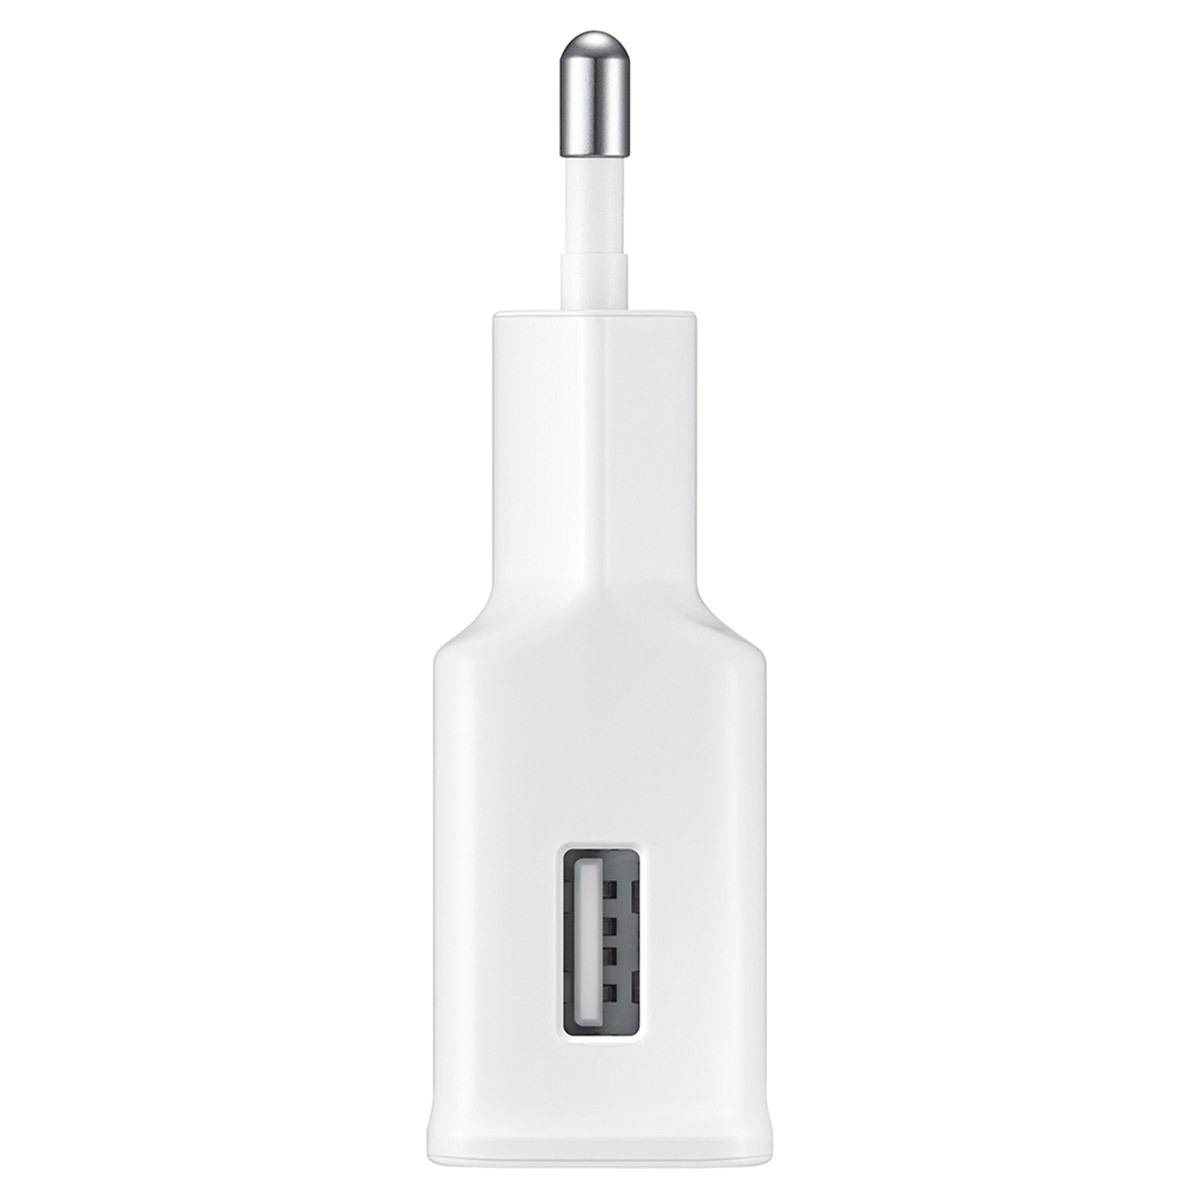 삼성 15W 충전기 (USB A to C 케이블 포함) - 화이트